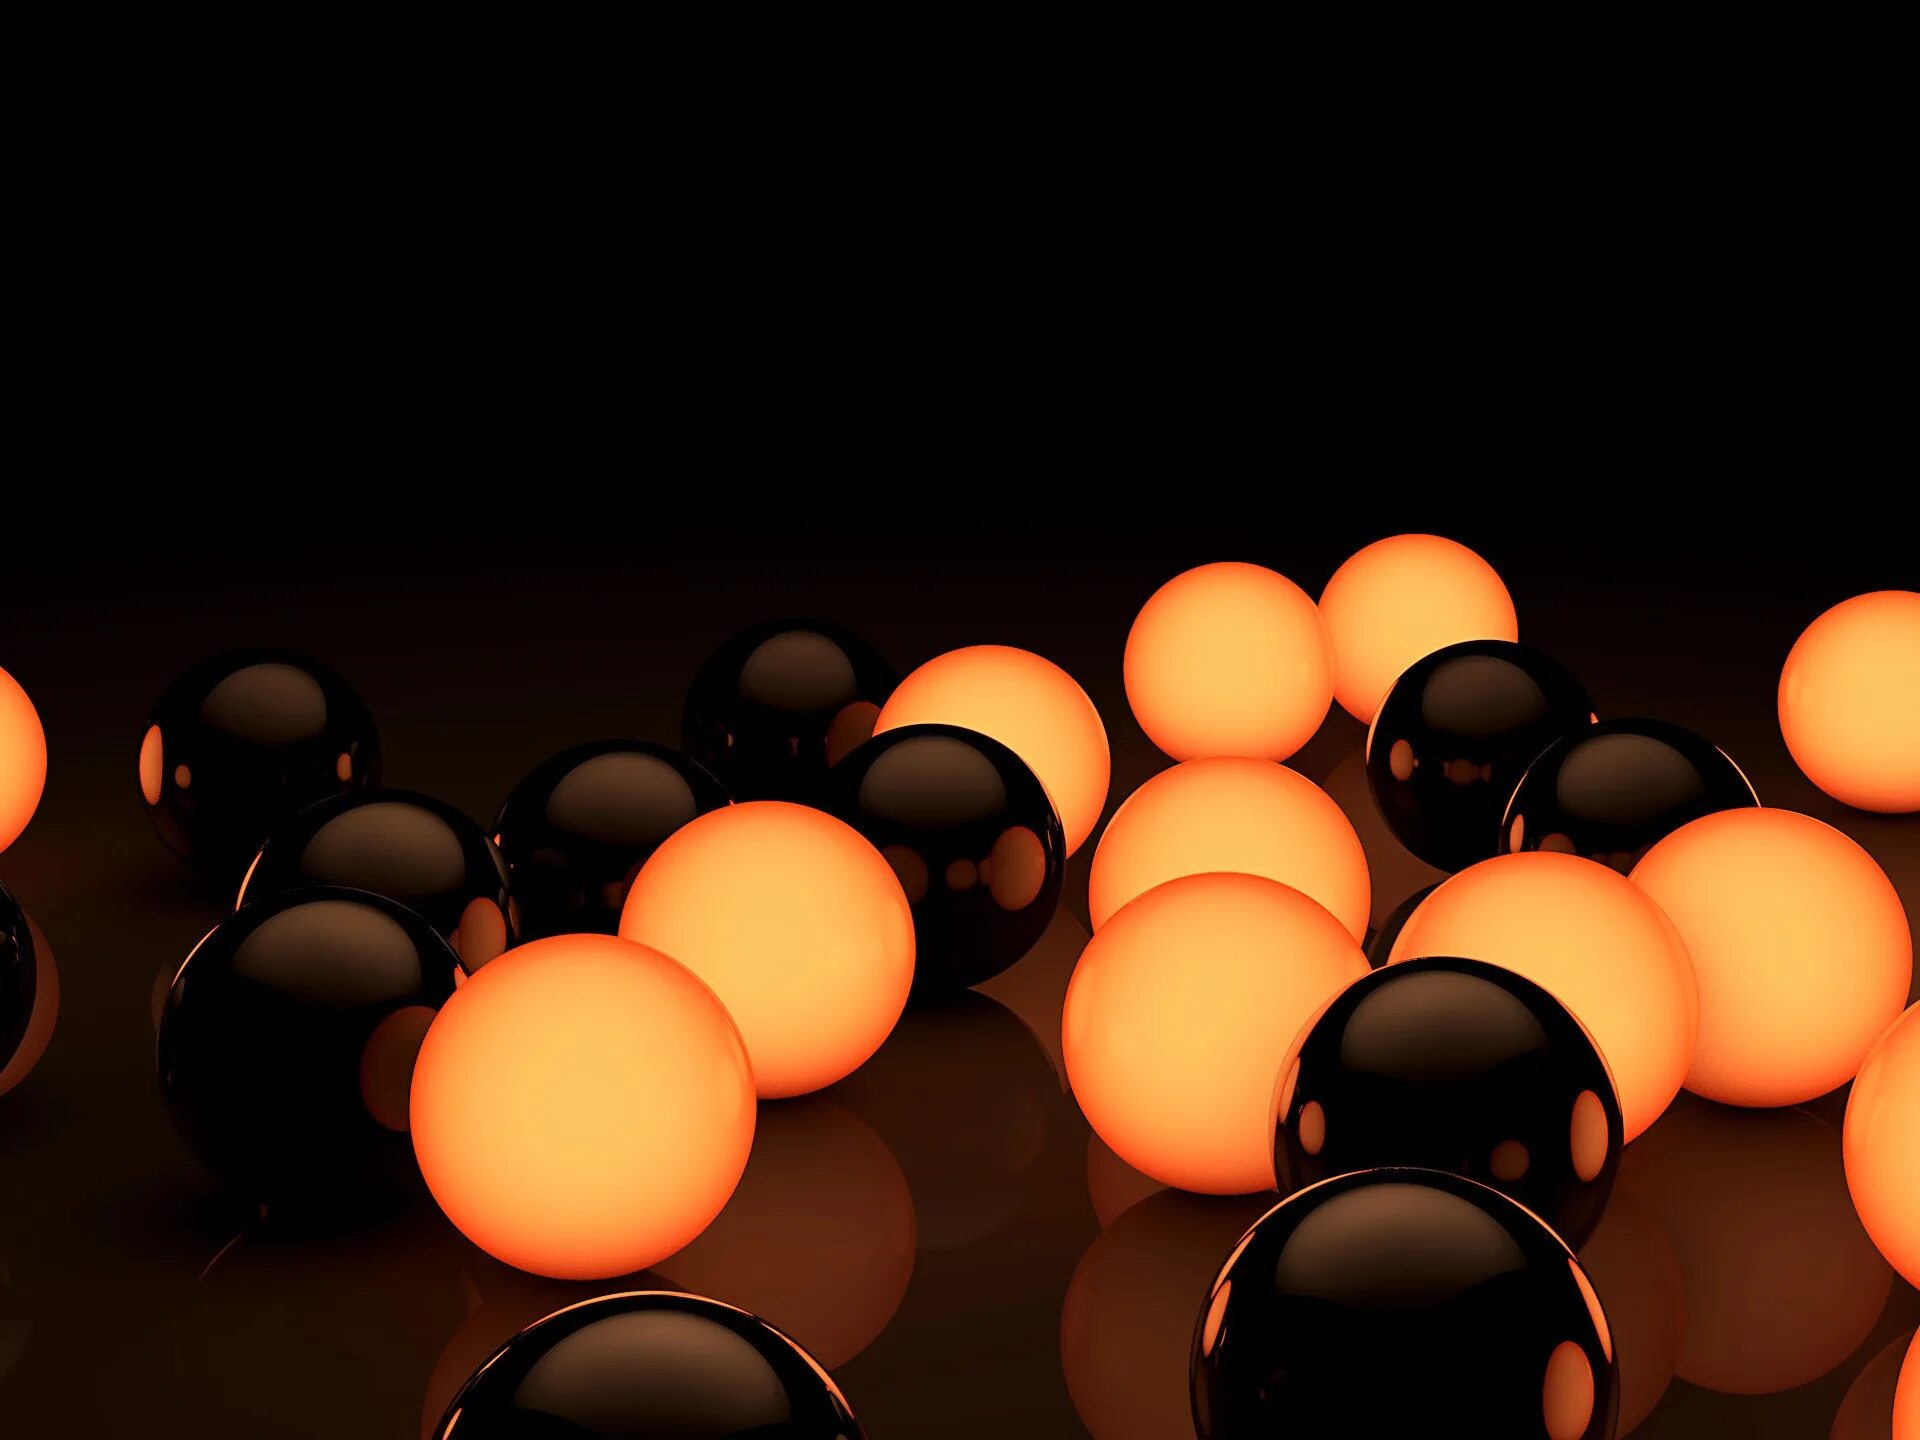 Цветные шары на черном фоне. Оранжево-черные шары. Заставка на рабочий стол шары. Шарики на темном фоне.